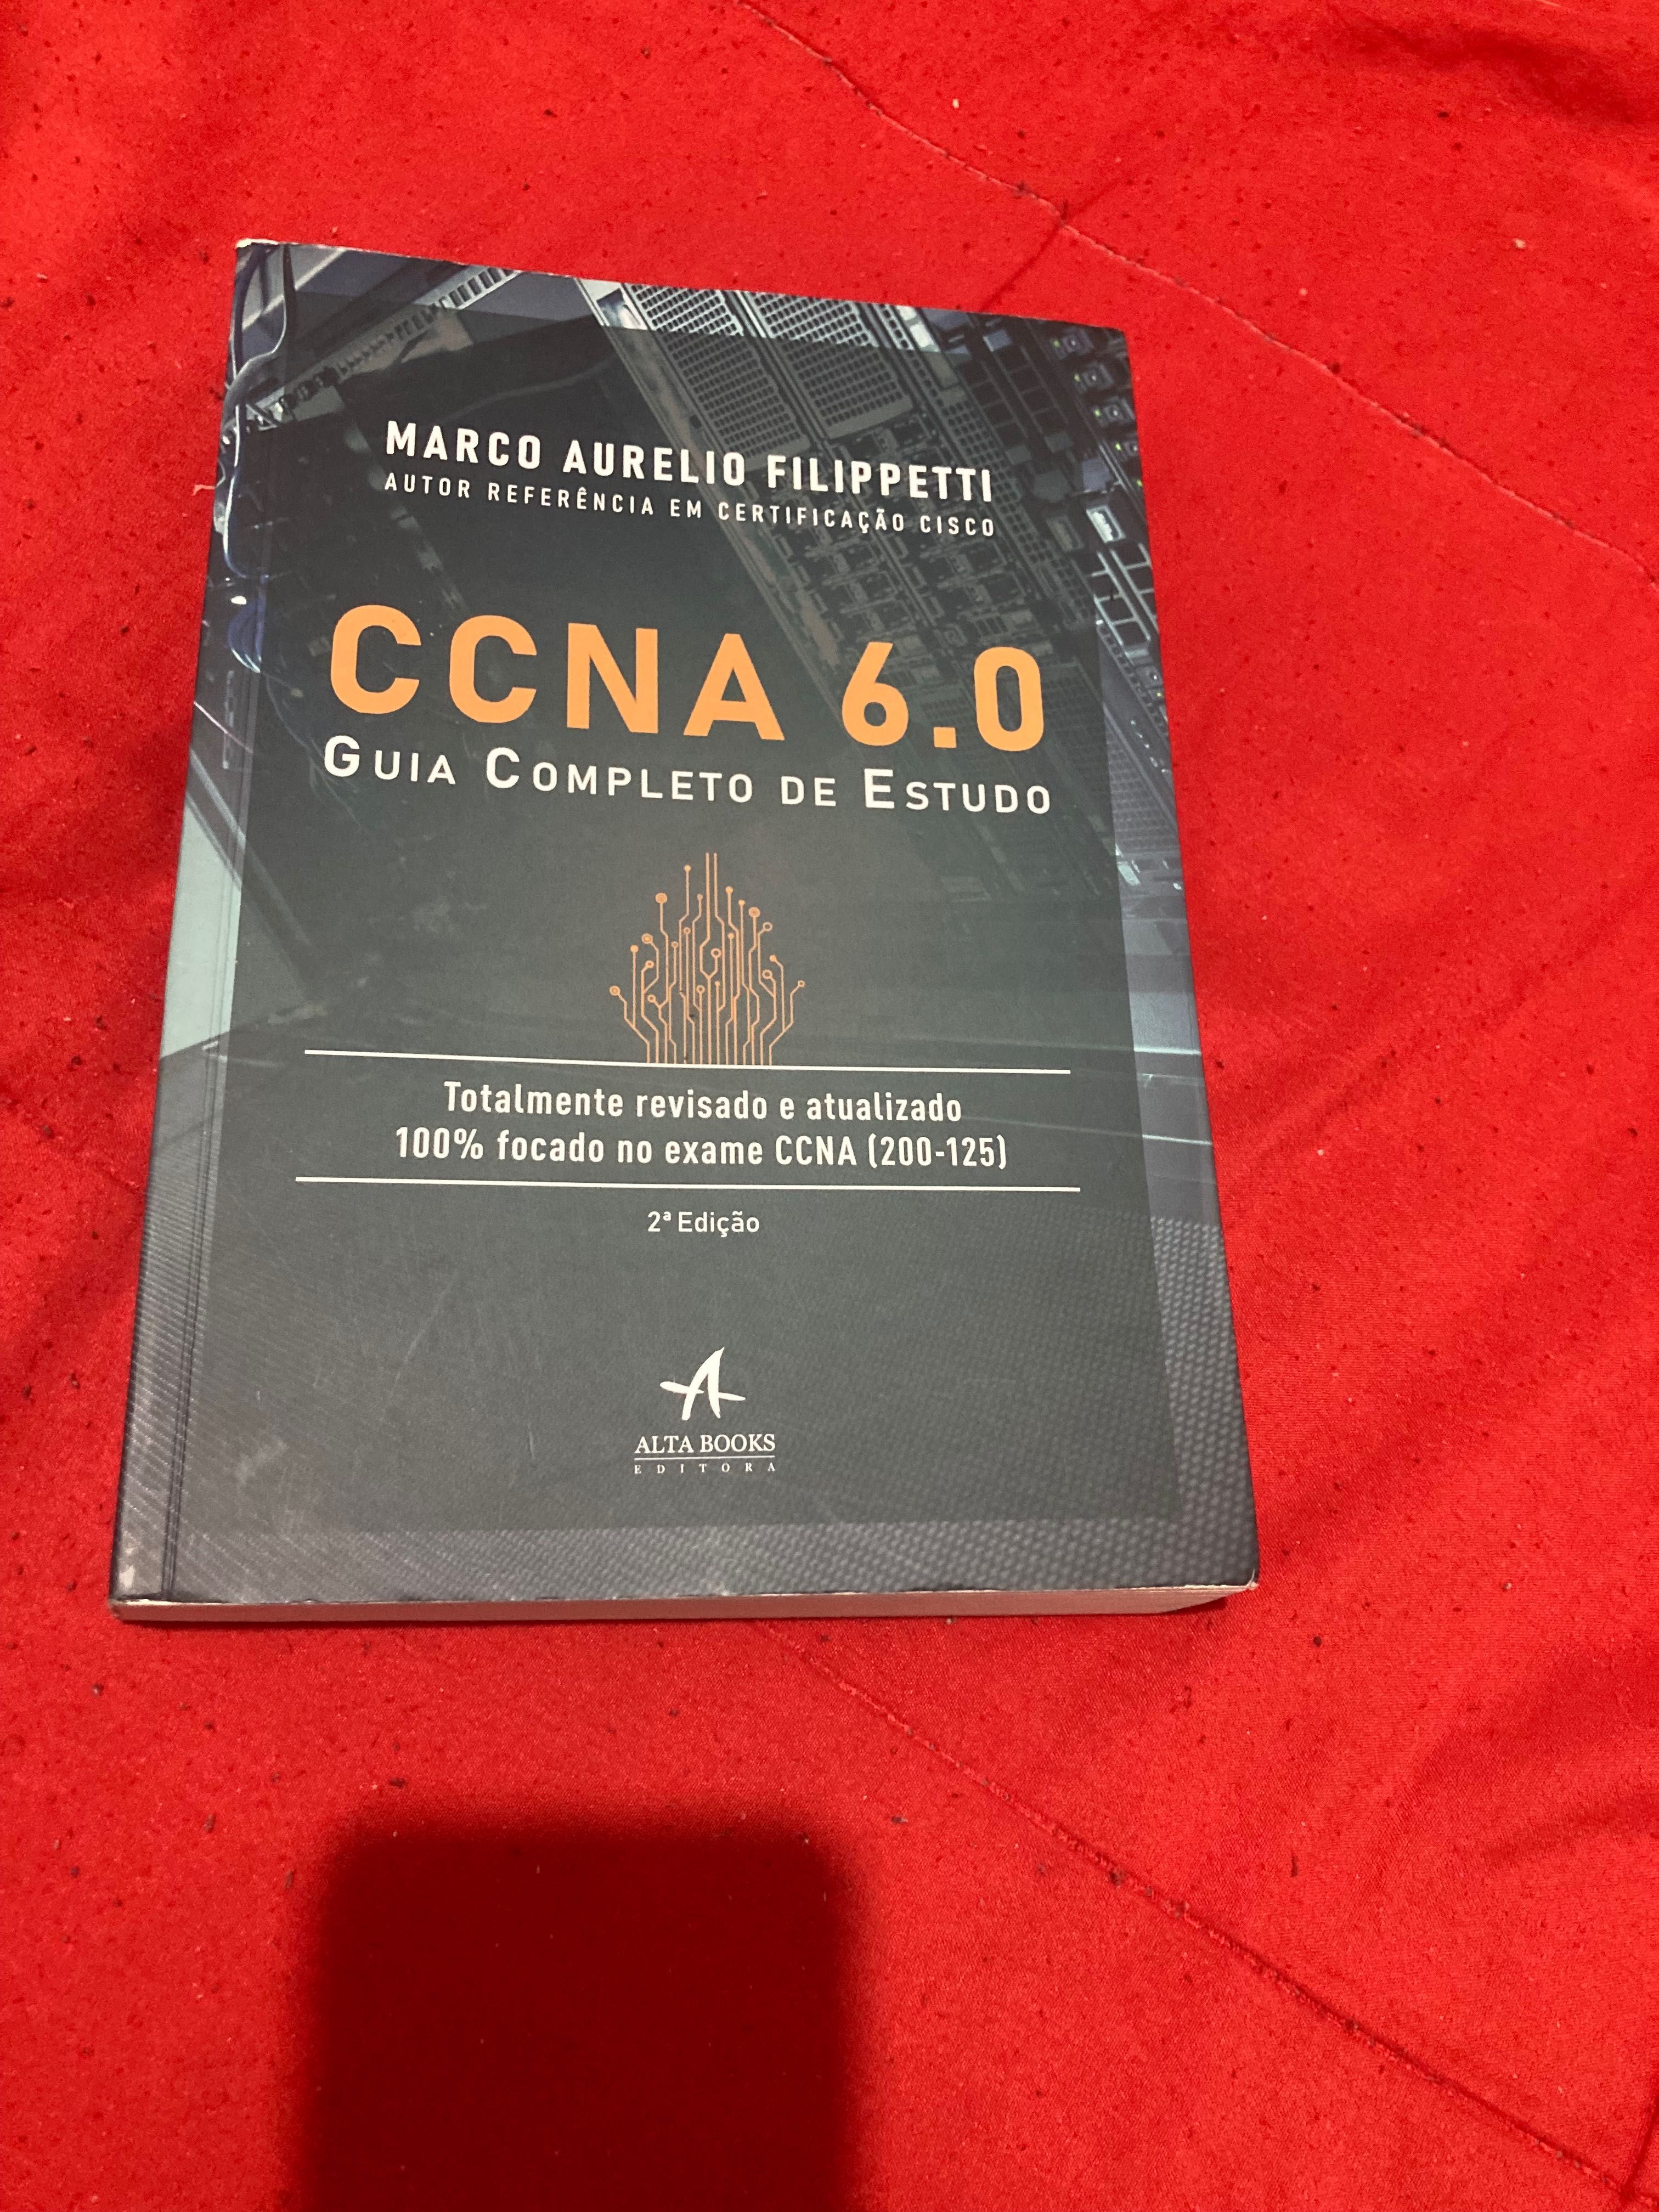 CCNA - Guia Completo de Estudo